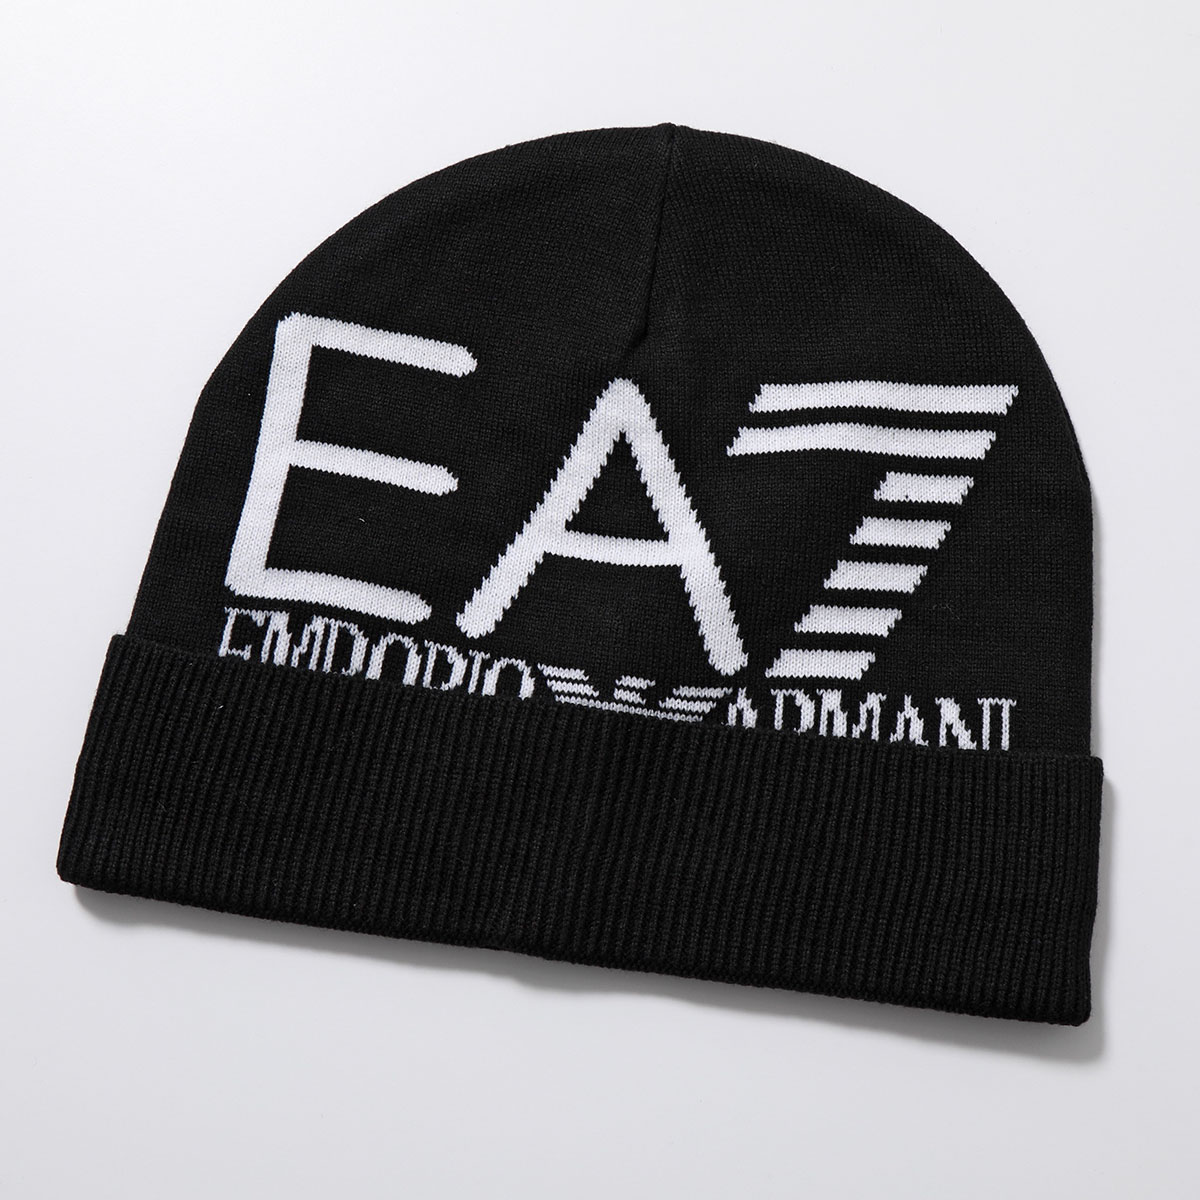 EA7 EMPORIO ARMANI エアセッテ エンポリオアルマーニ ニット帽 240127 CC200 メンズ ニットキャップ ビーニー  ジャガードロゴ 帽子 カラー3色